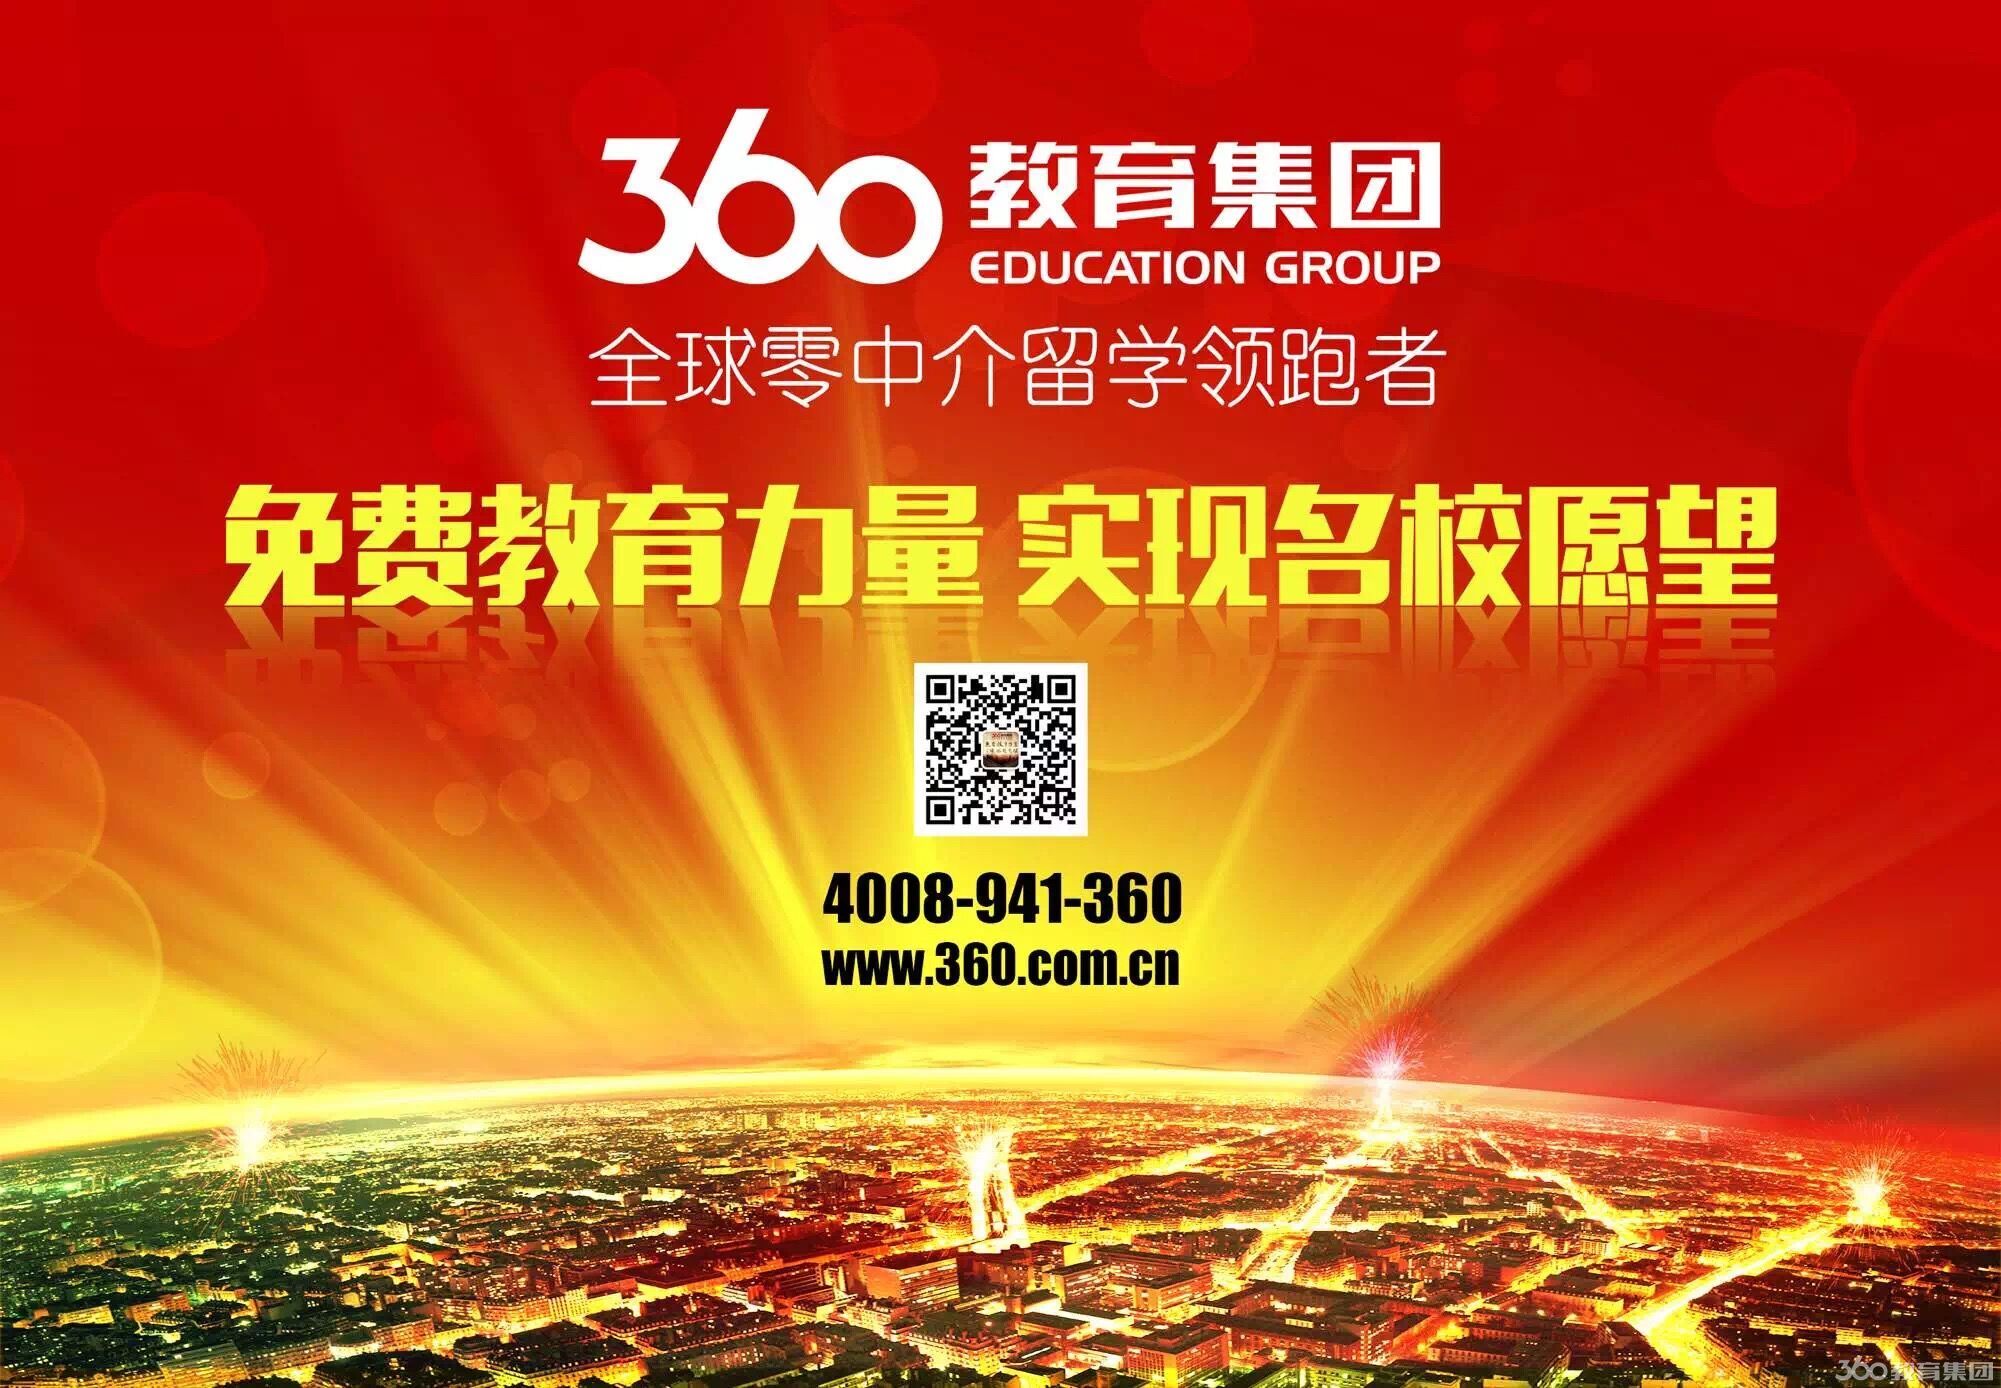 留学机构招聘 上海 - 留学360专题热搜